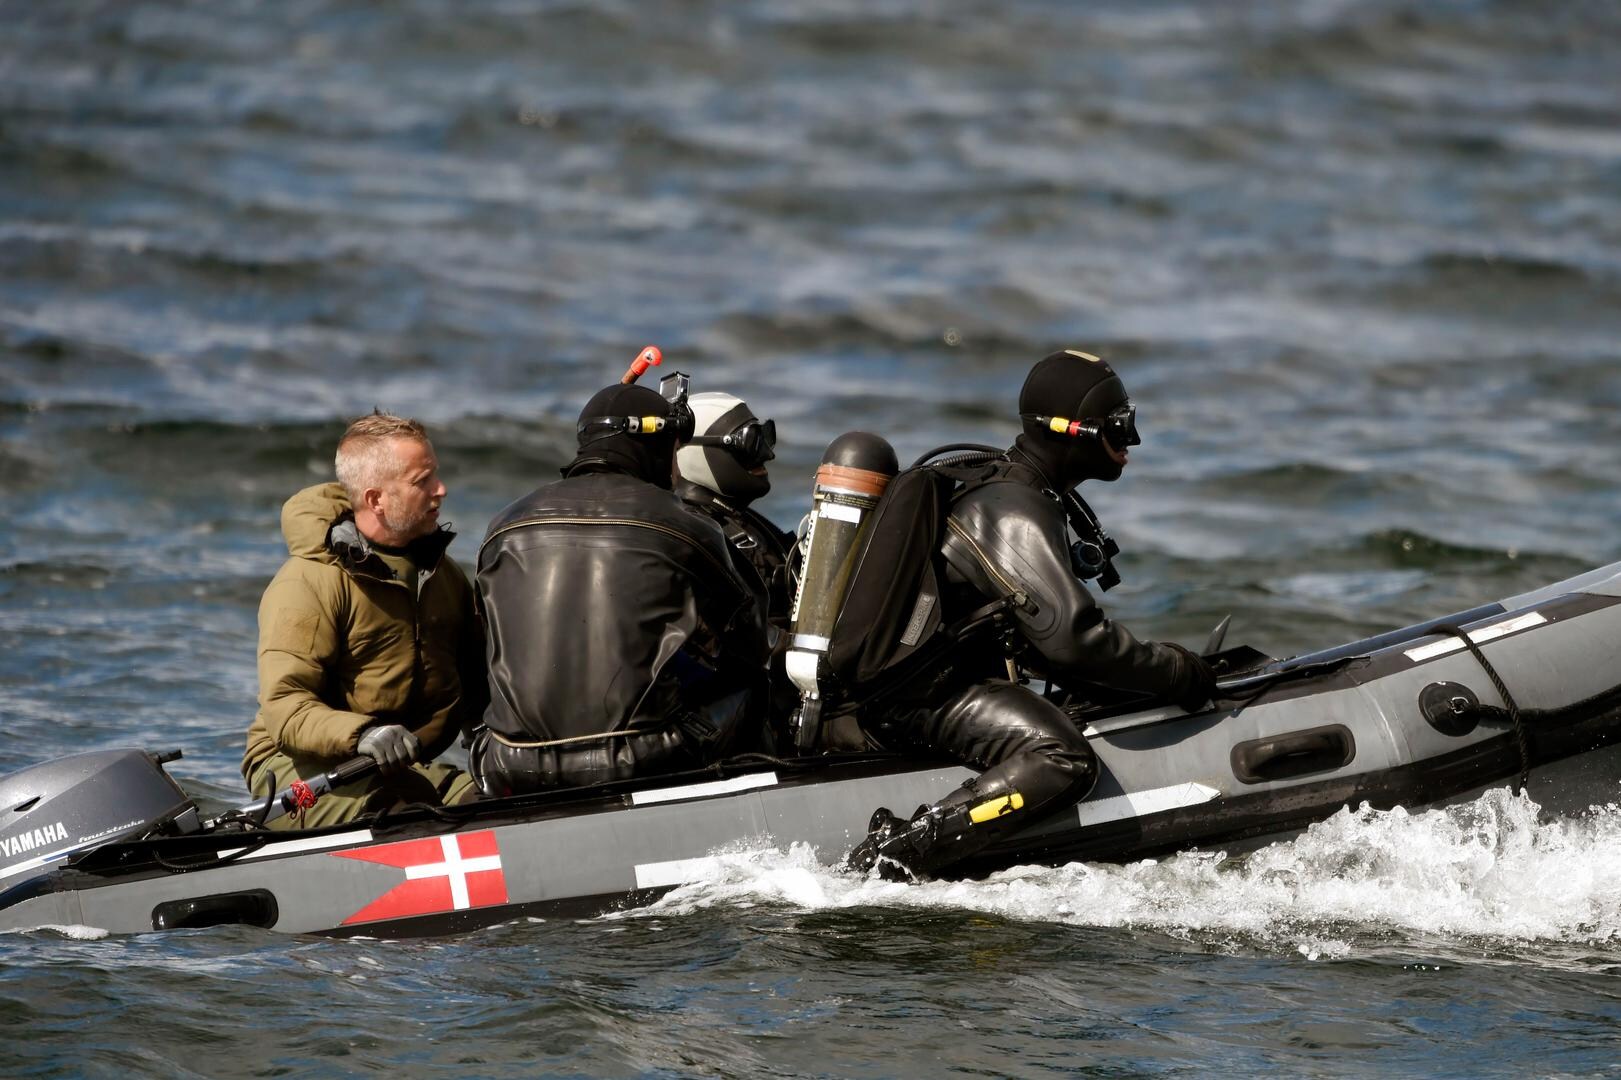 Deense politie vindt vrouwelijke romp zonder ledematen in water: is het de "verongelukte" journaliste?